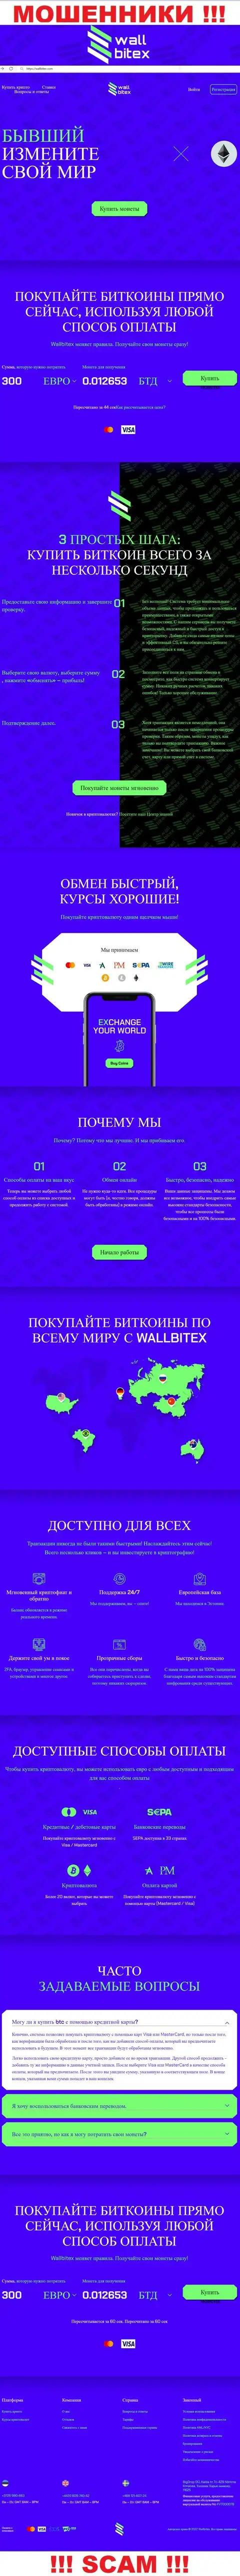 ВаллБитекс Ком - это официальный веб-сервис мошеннической компании WallBitex